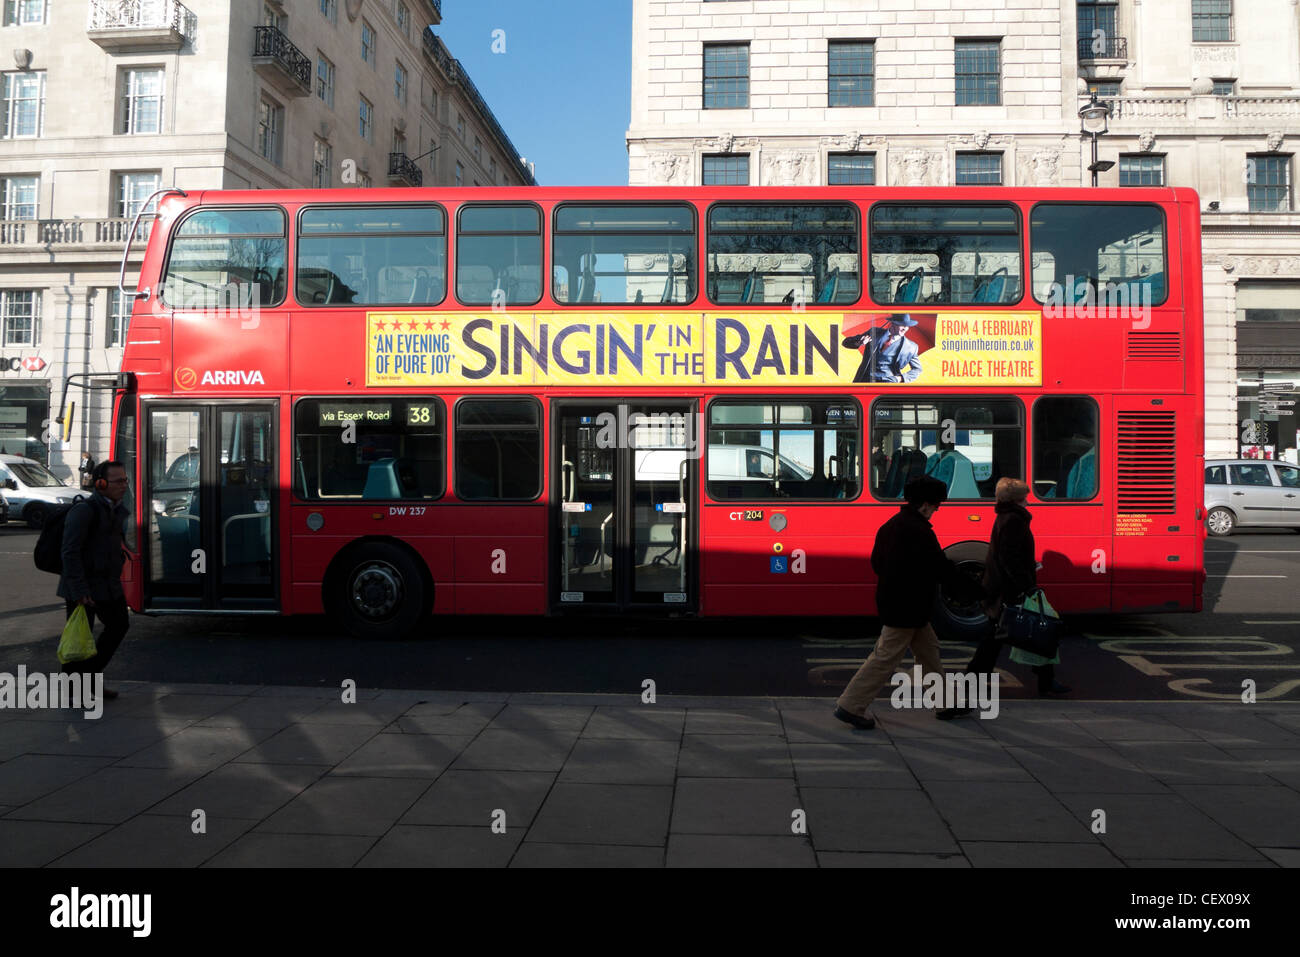 Une publicité pour de '' in the Rain' sur le côté d'un bus double étage 38 sur Oxford Street, West End, London England UK Banque D'Images